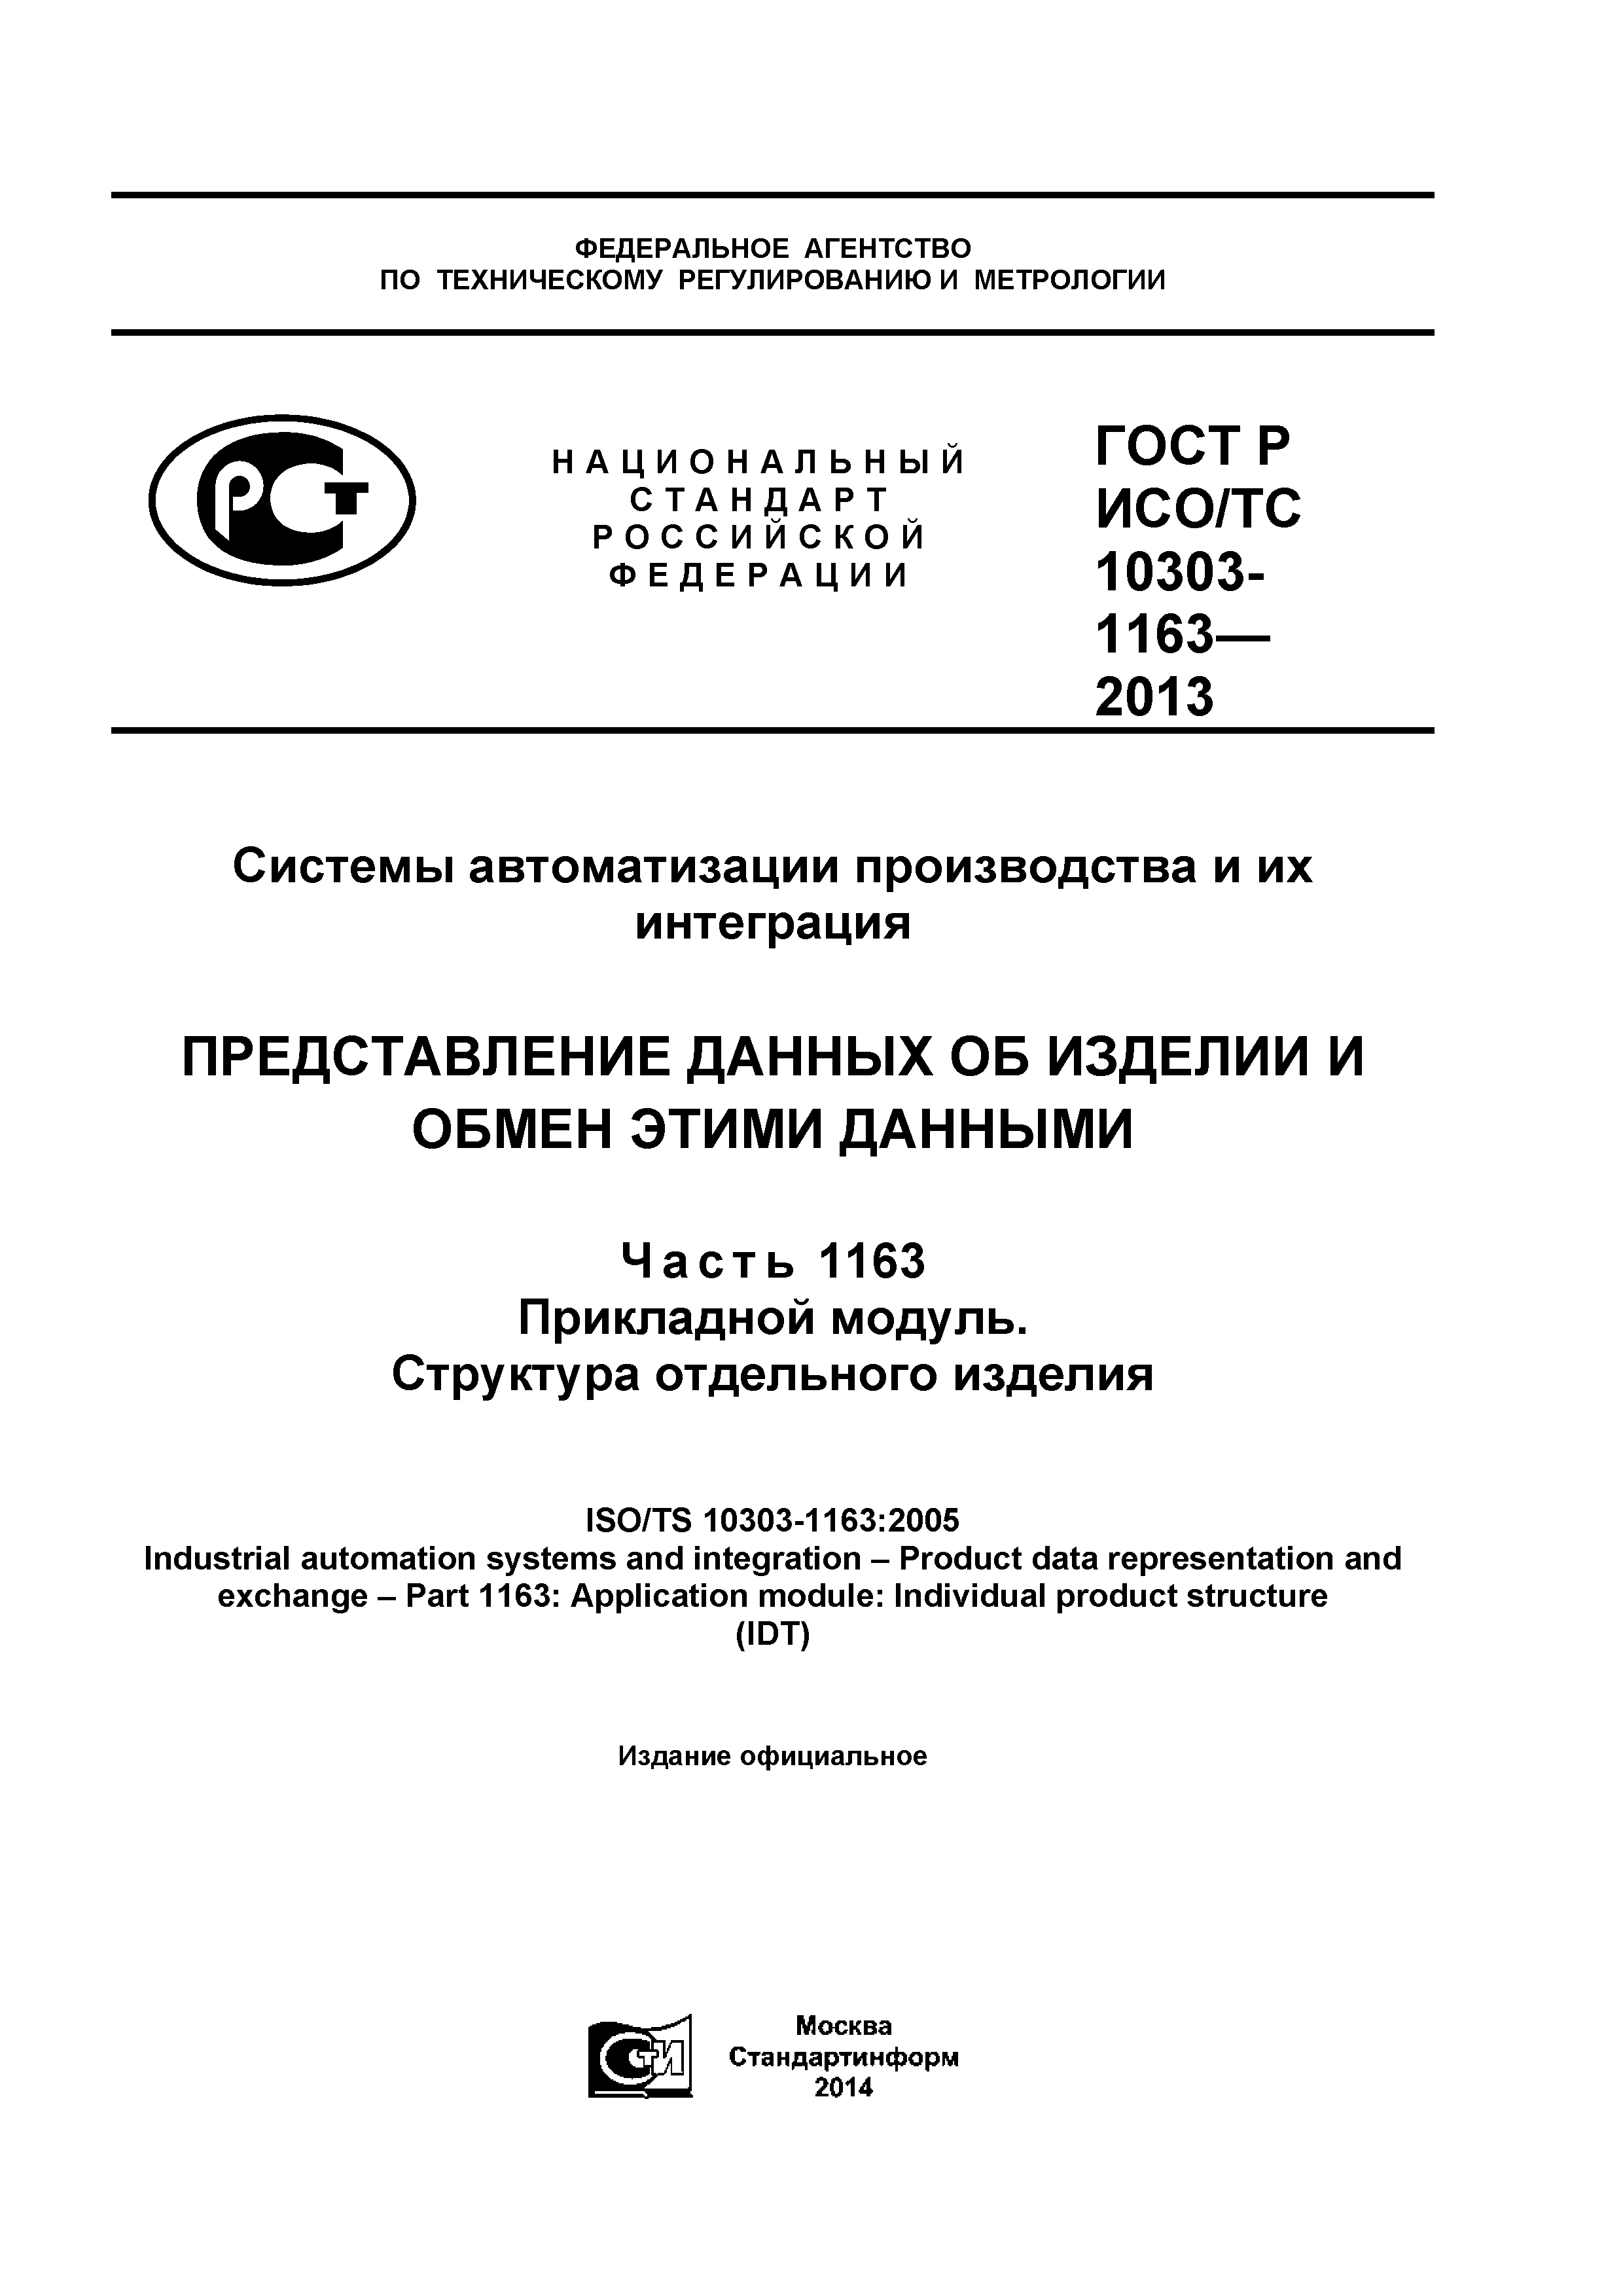 ГОСТ Р ИСО/ТС 10303-1163-2013